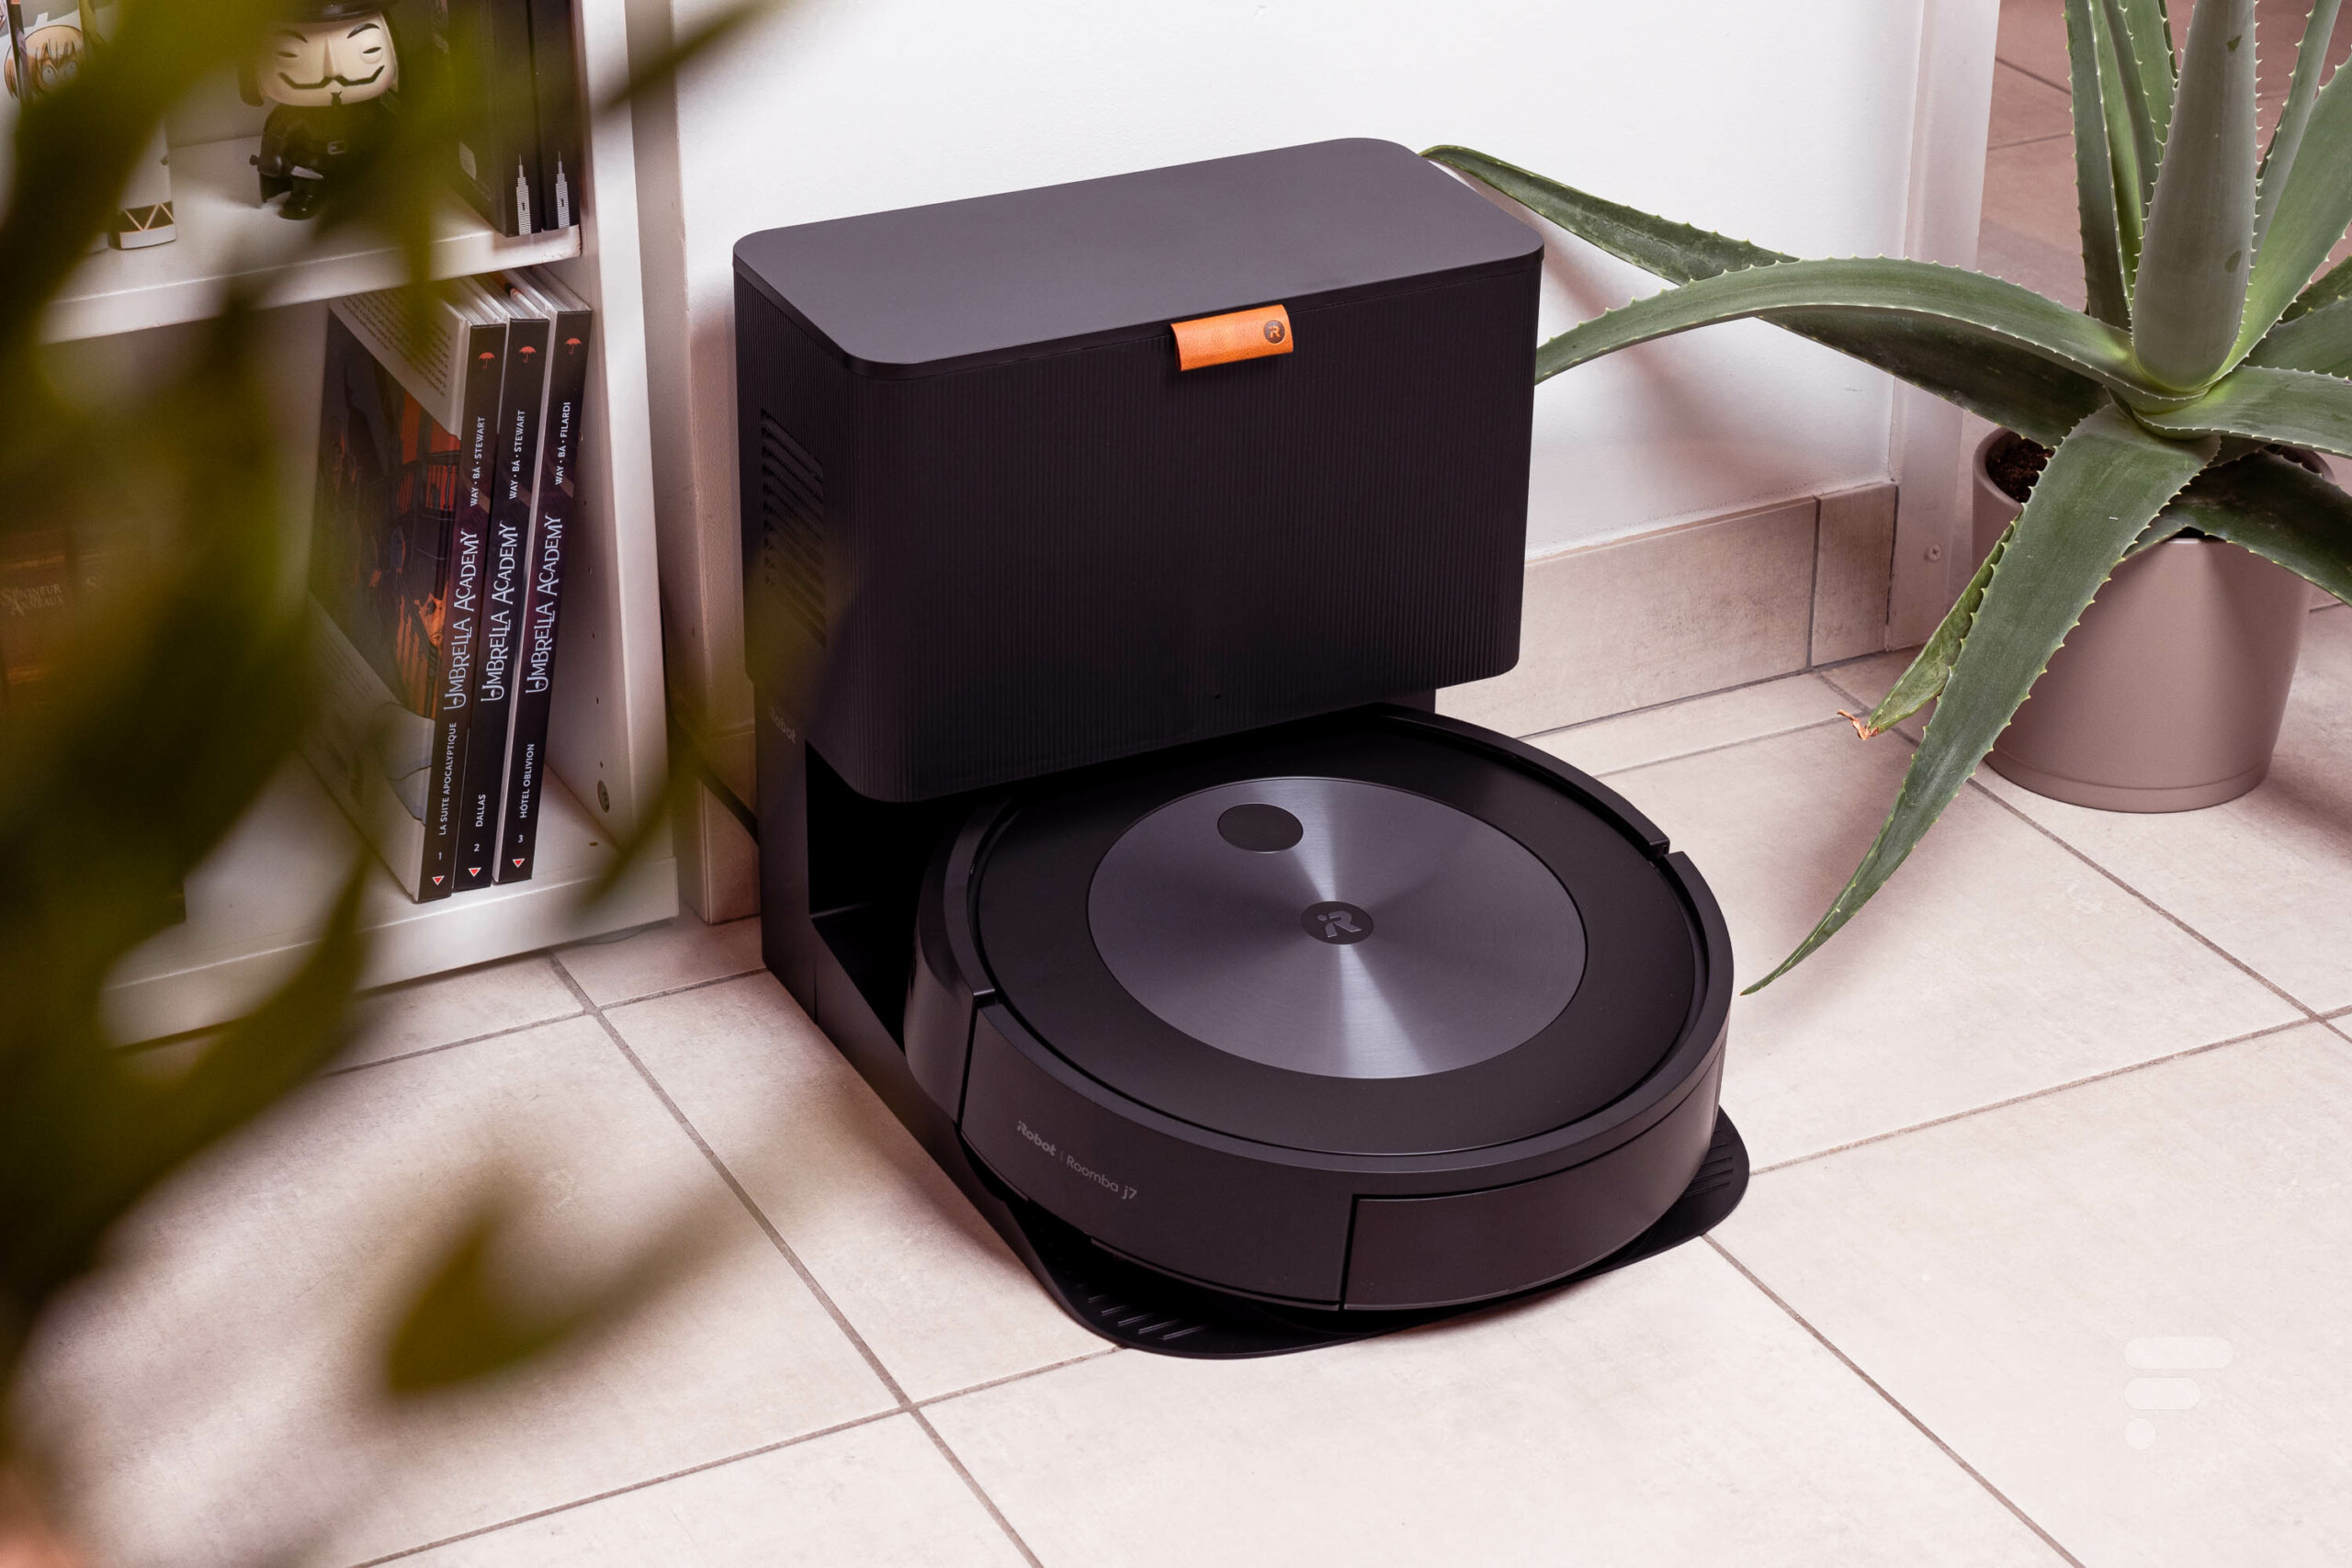 Kit d'Entretien Complet pour iRobot Roomba j7